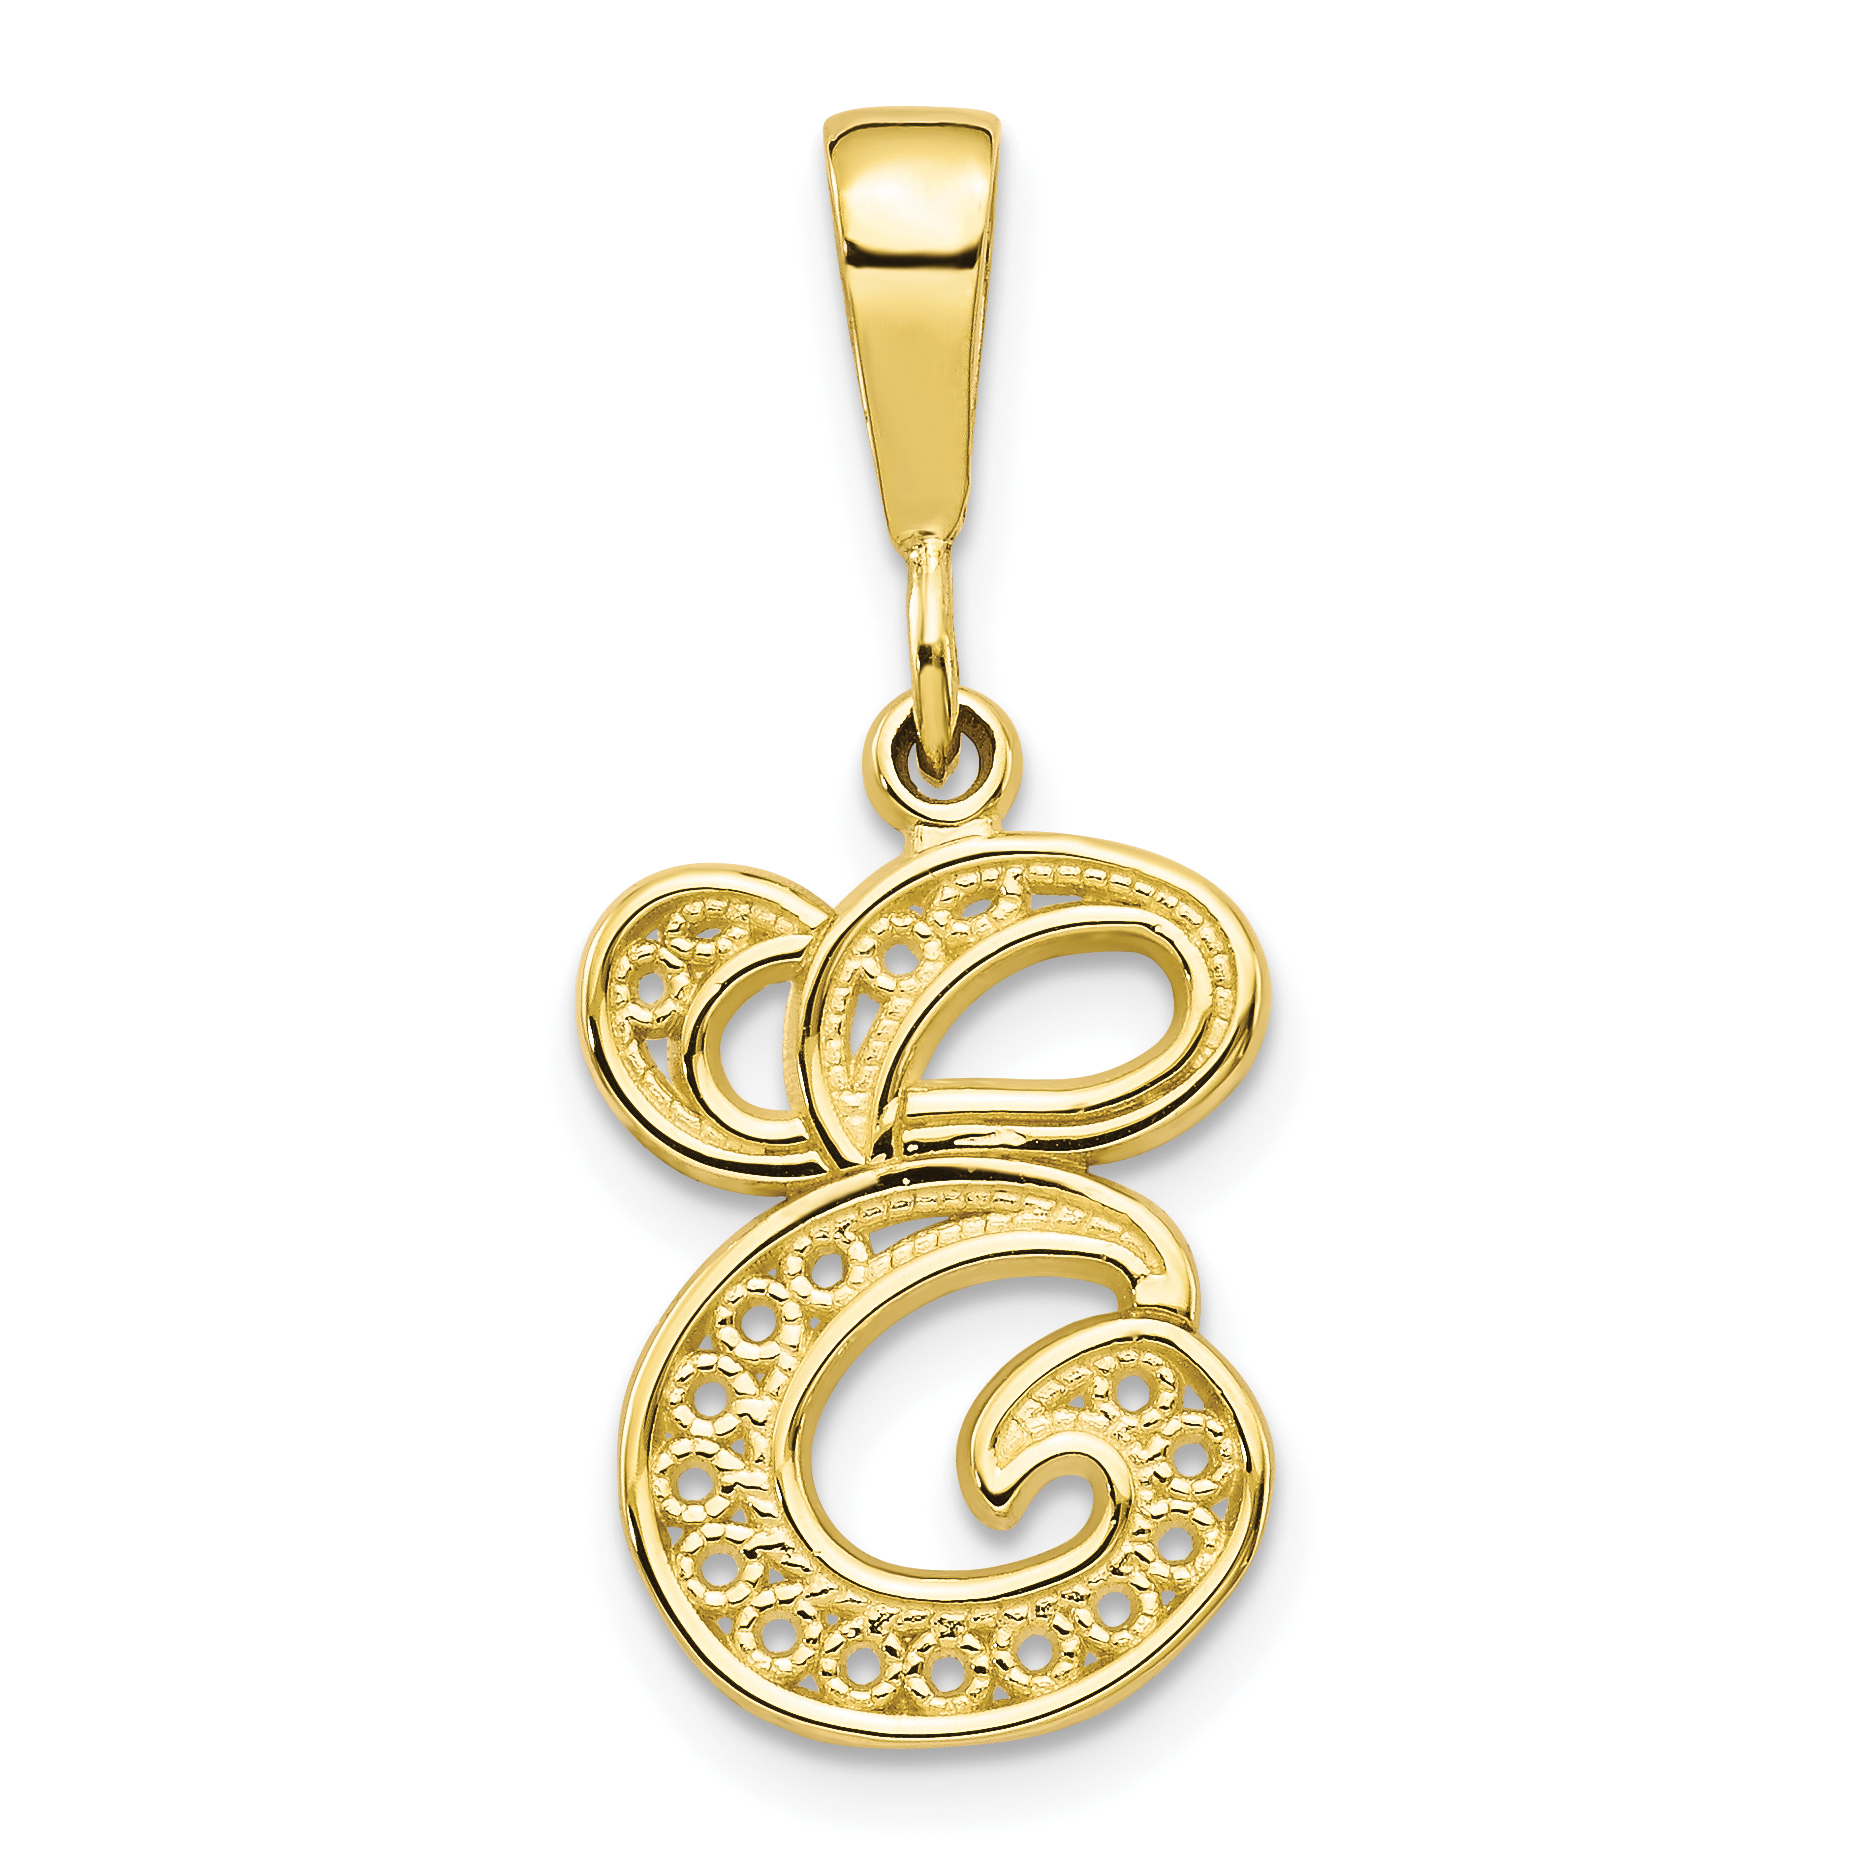 Initial e necklace letter e necklace letter necklace gold,monogram necklace initial heart necklace e initial necklace e letter necklace